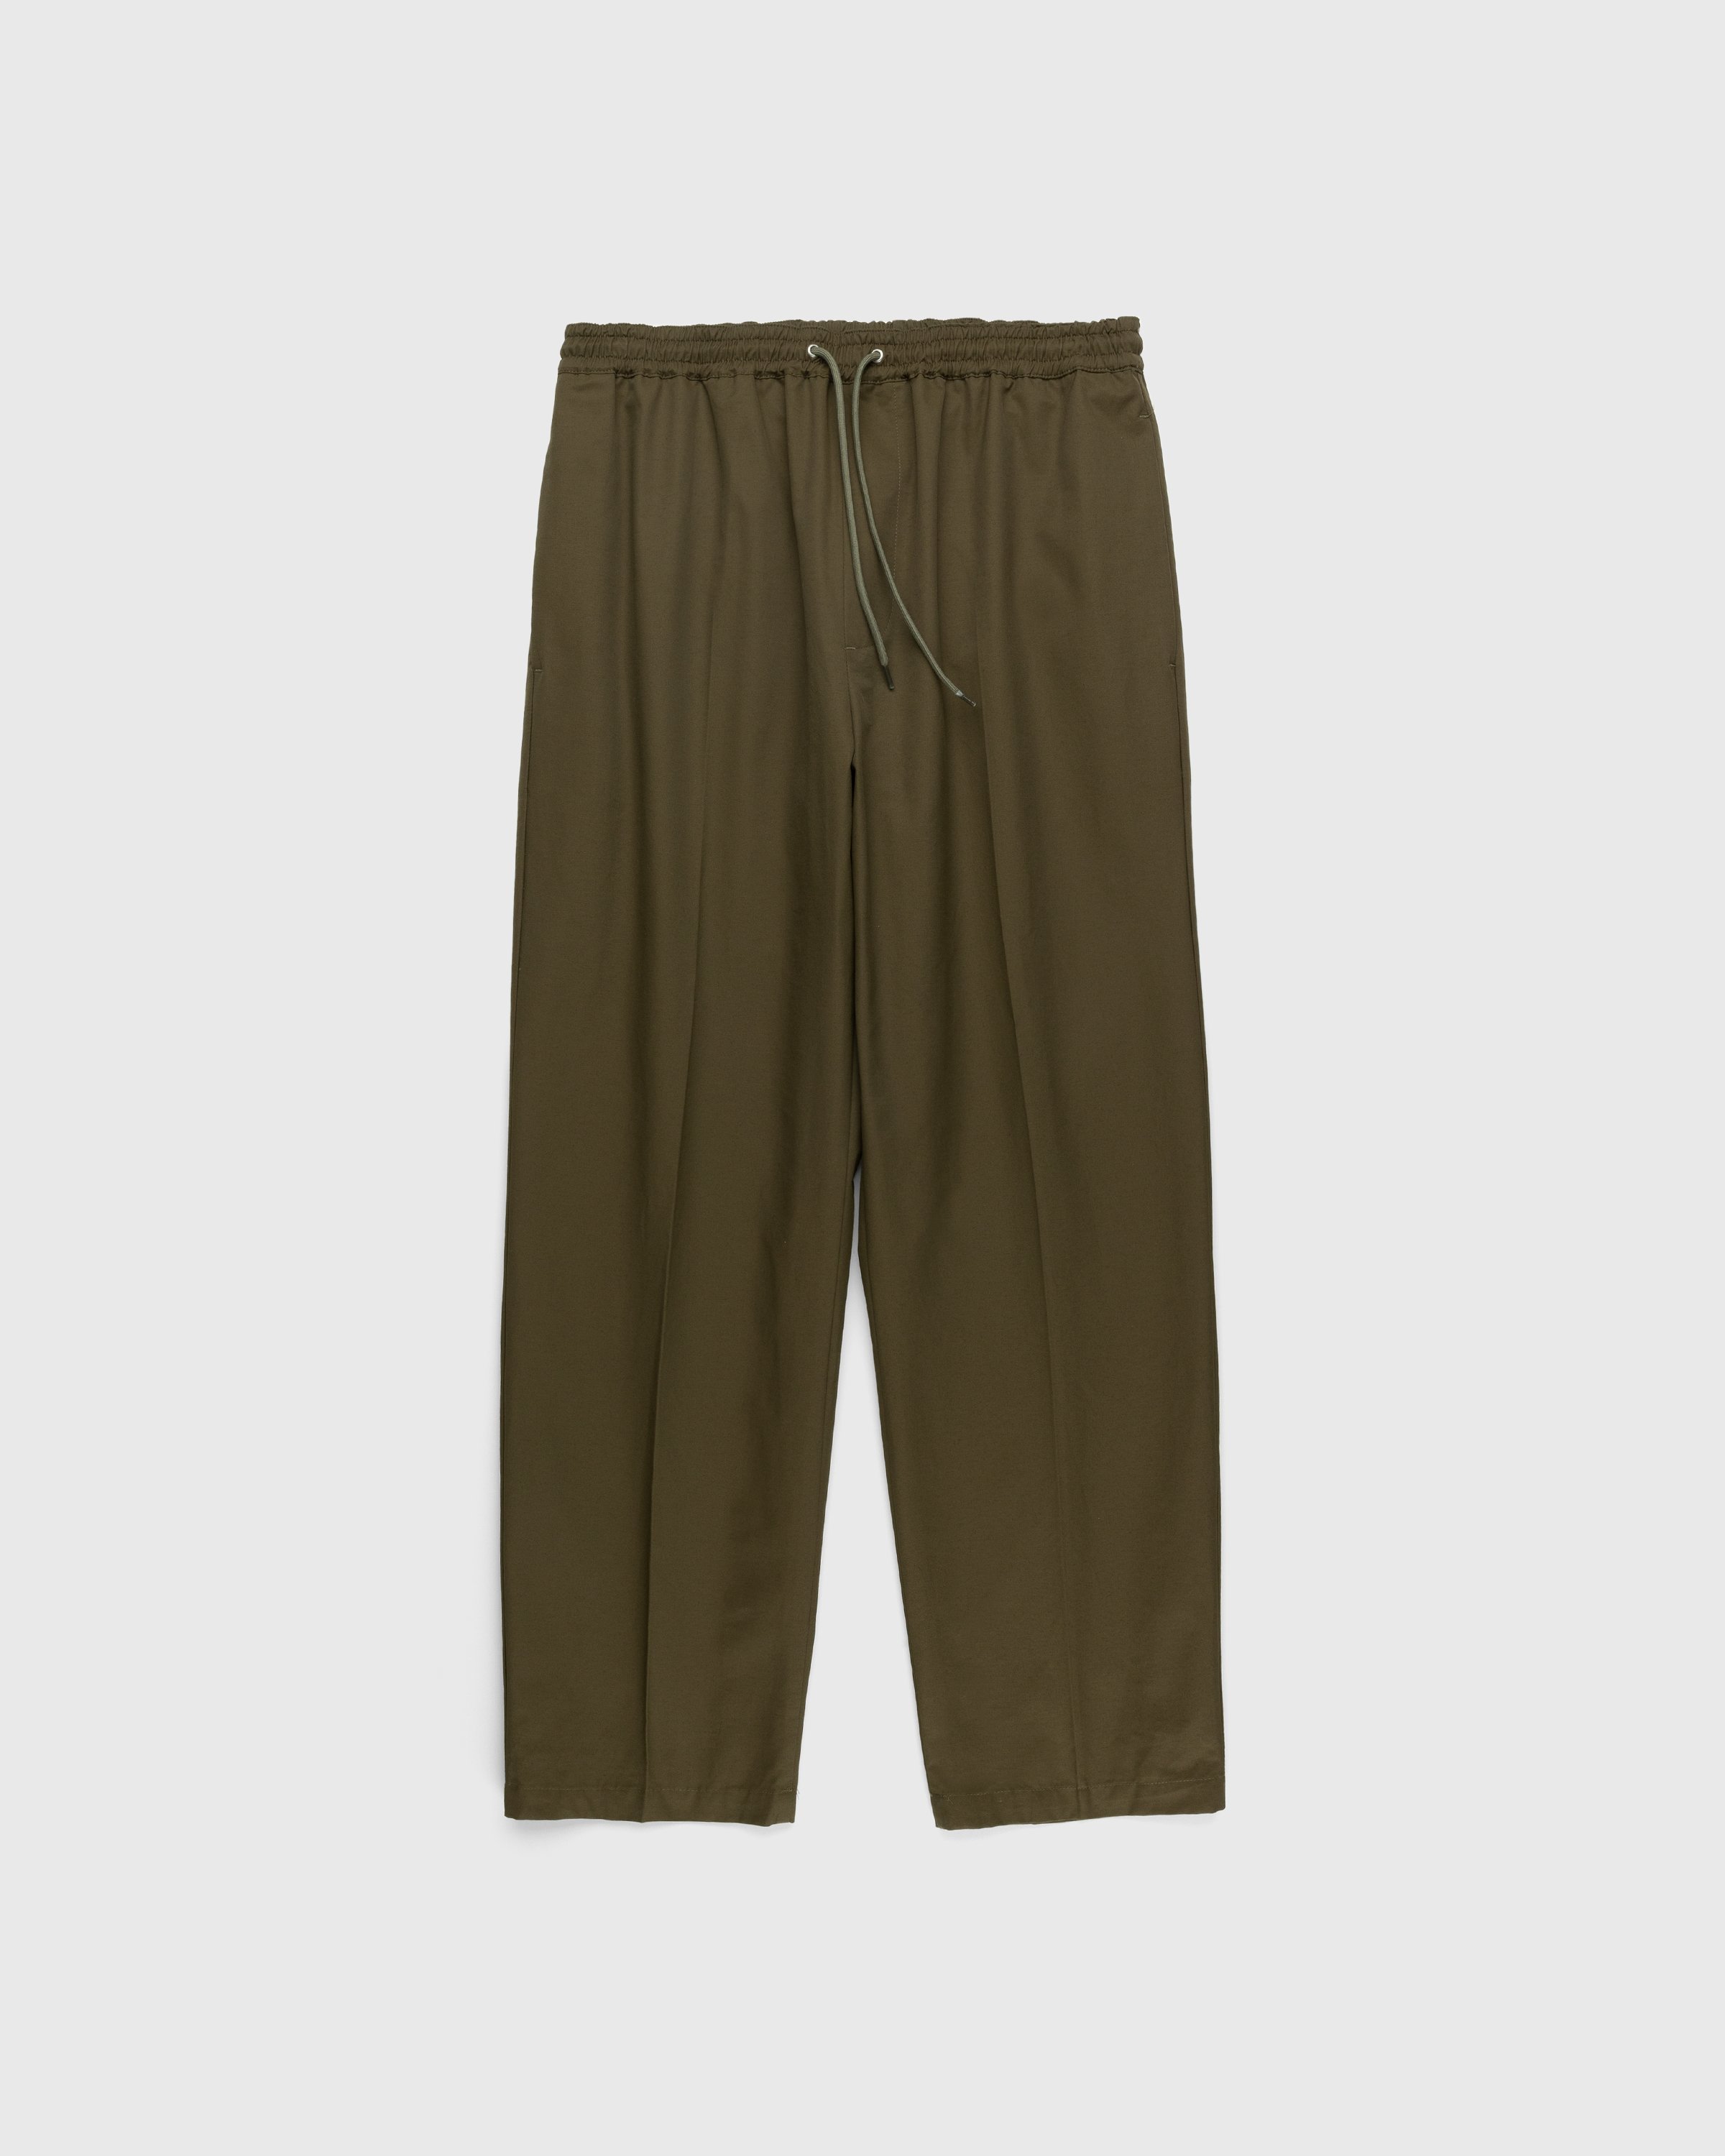 Highsnobiety - Cotton Nylon Elastic Pants Olive - Clothing - Green - Image 1